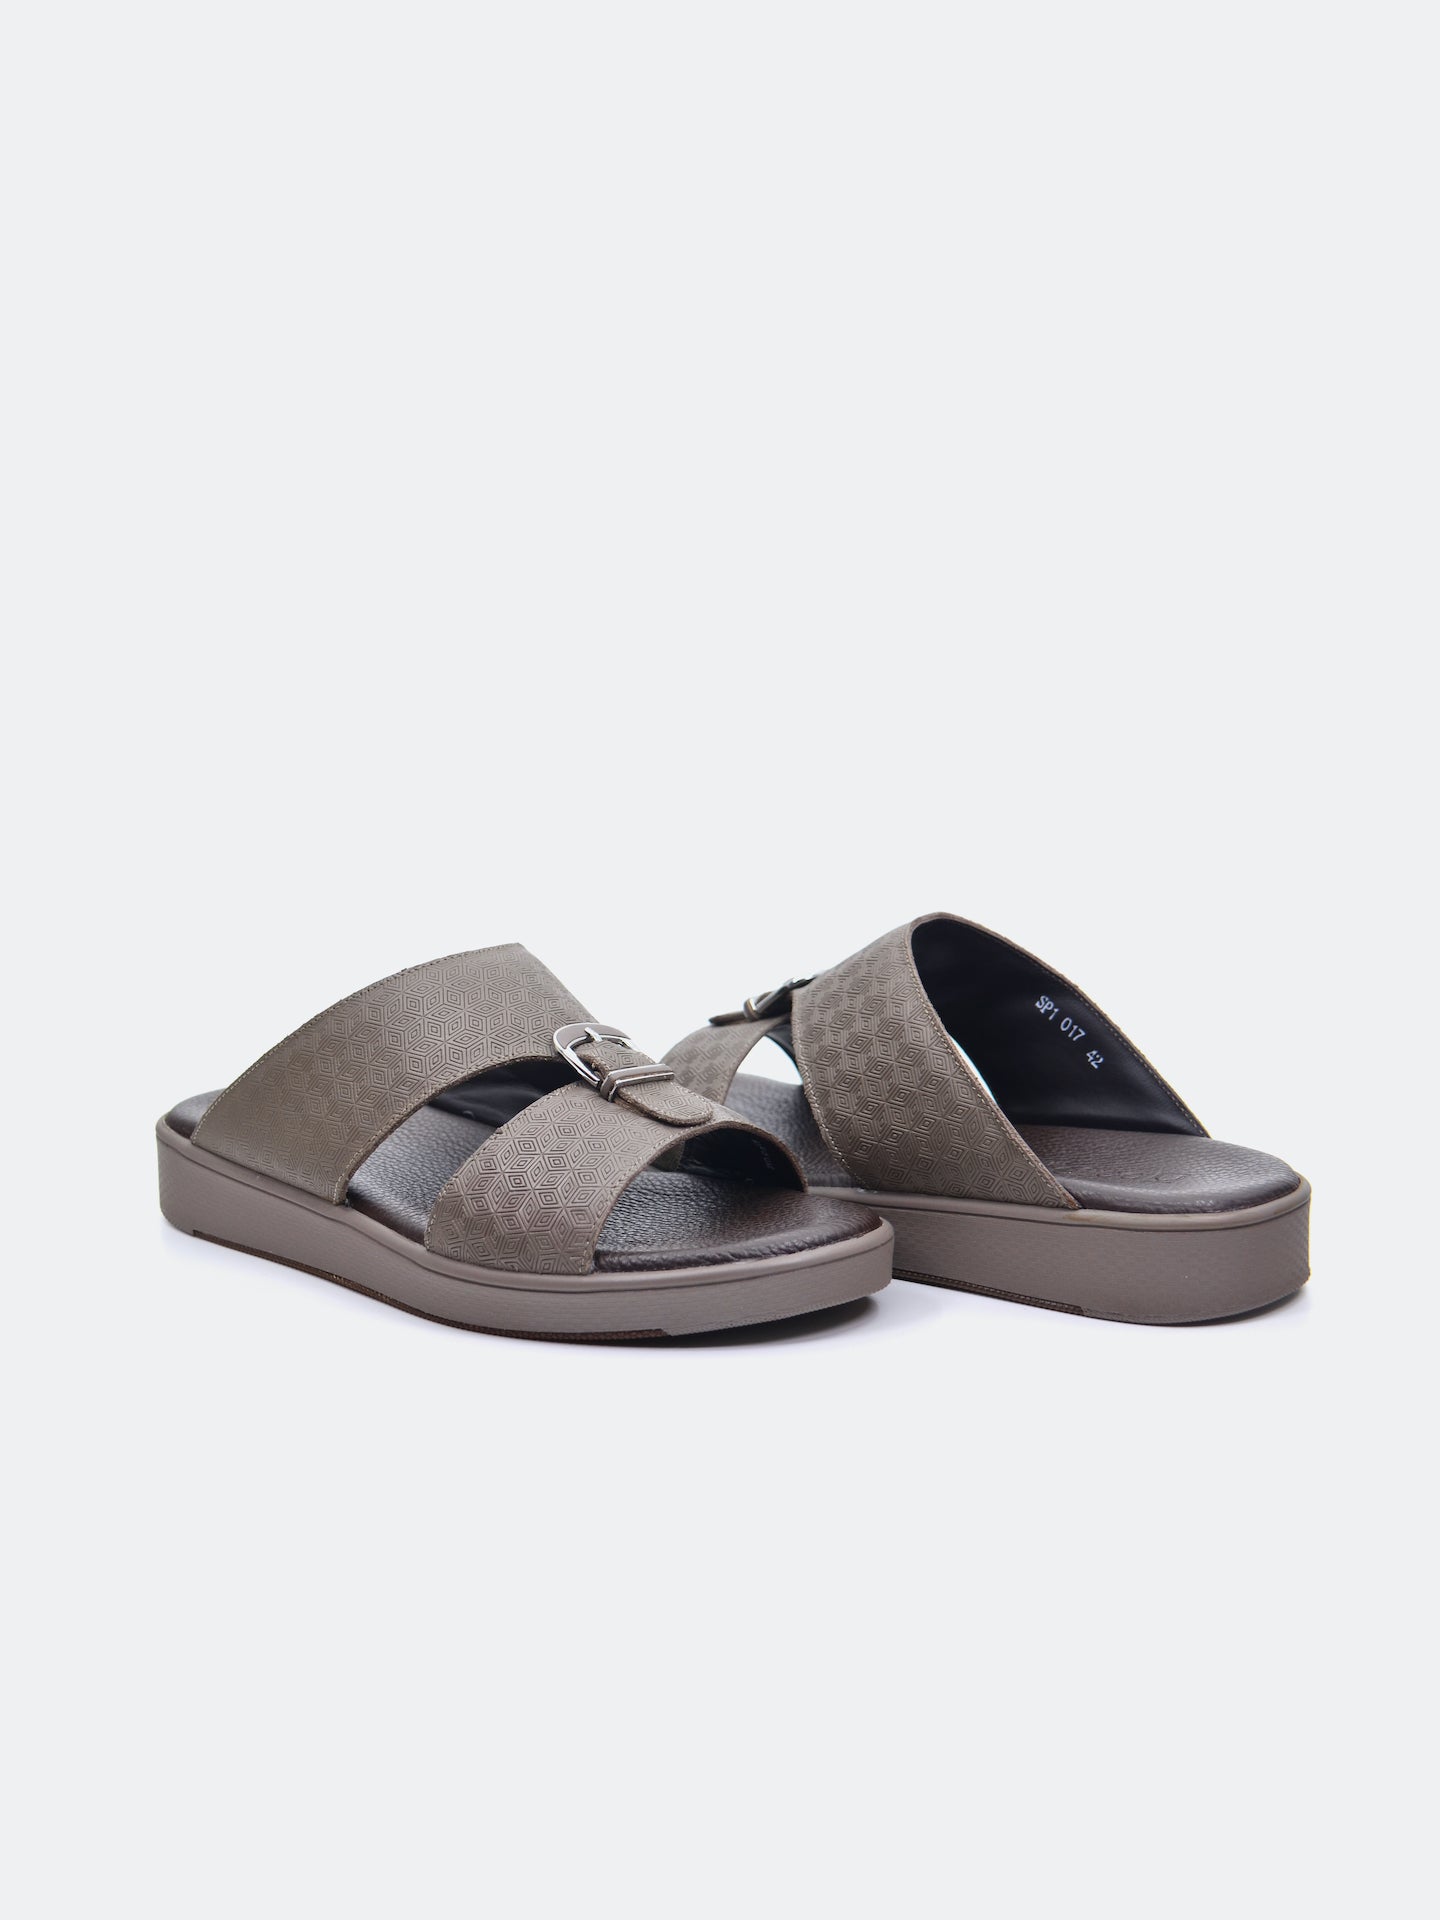 Barjeel Uno SP1-017 Men's Arabic Sandals #color_Beige